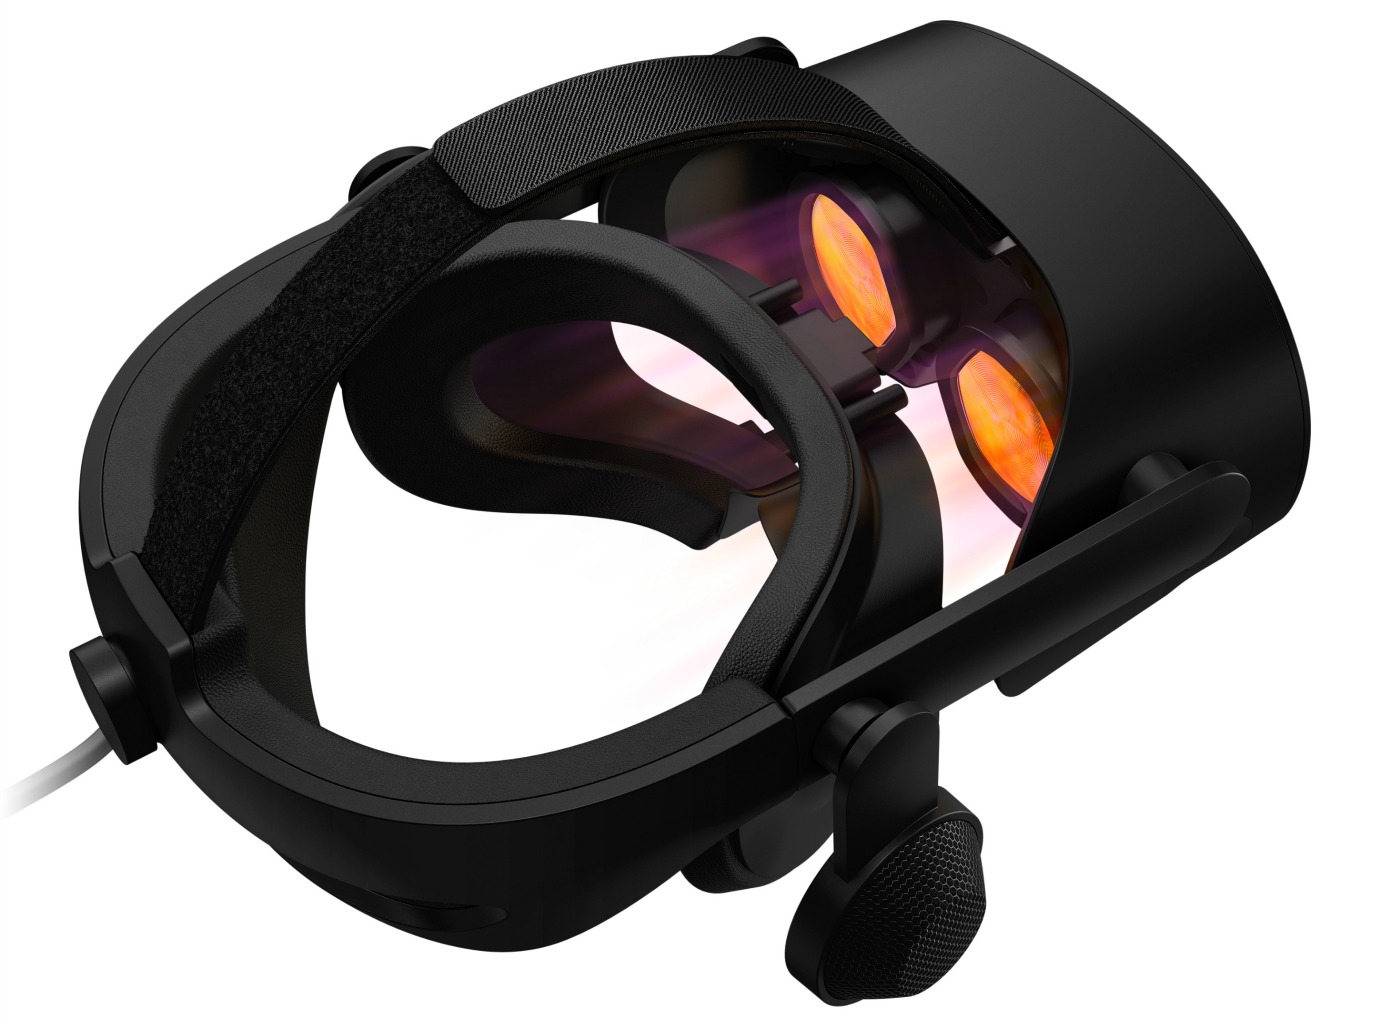 Test] HP Reverb G2 : Une nouvelle référence pour la réalité virtuelle sur PC